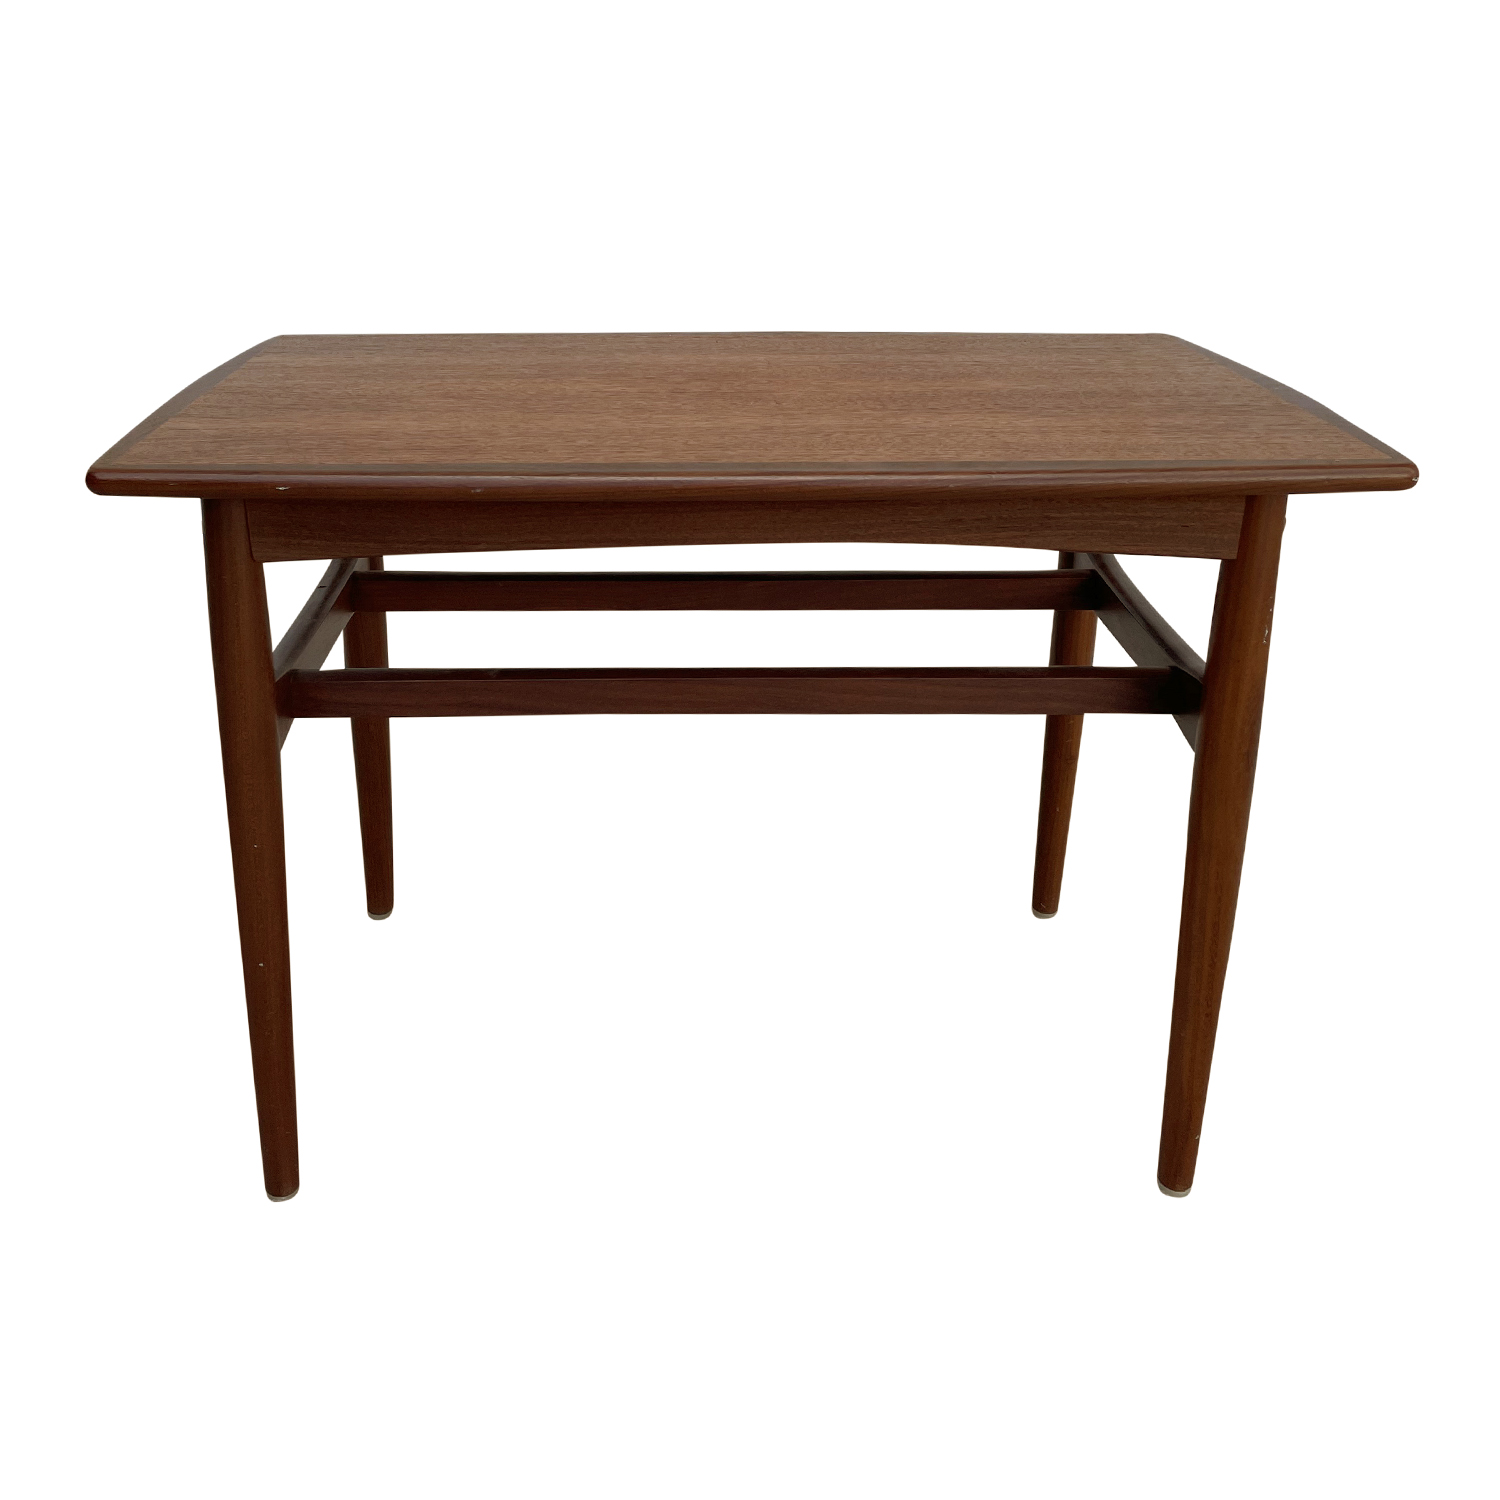 20th Century Danish Vintage Sofa Table – Scandinavian Teakwood Side Table